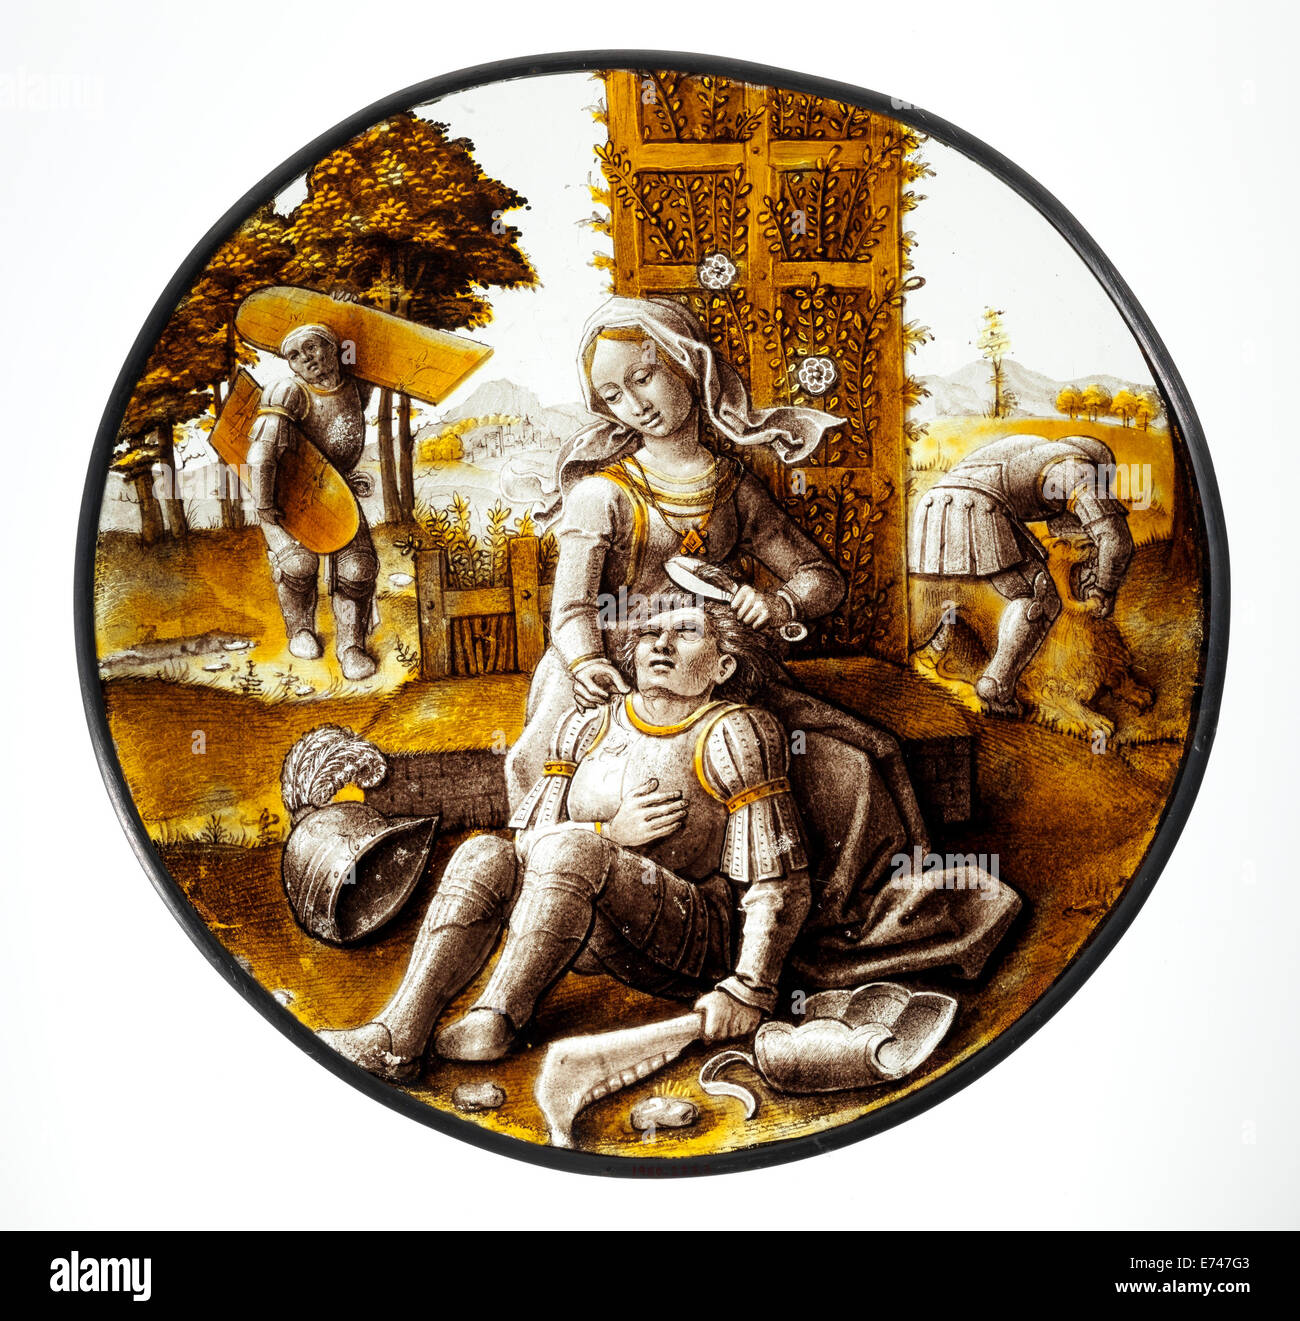 Las vidrieras Roundel con Dalila cortando el cabello de Sansón, 1520 Foto de stock